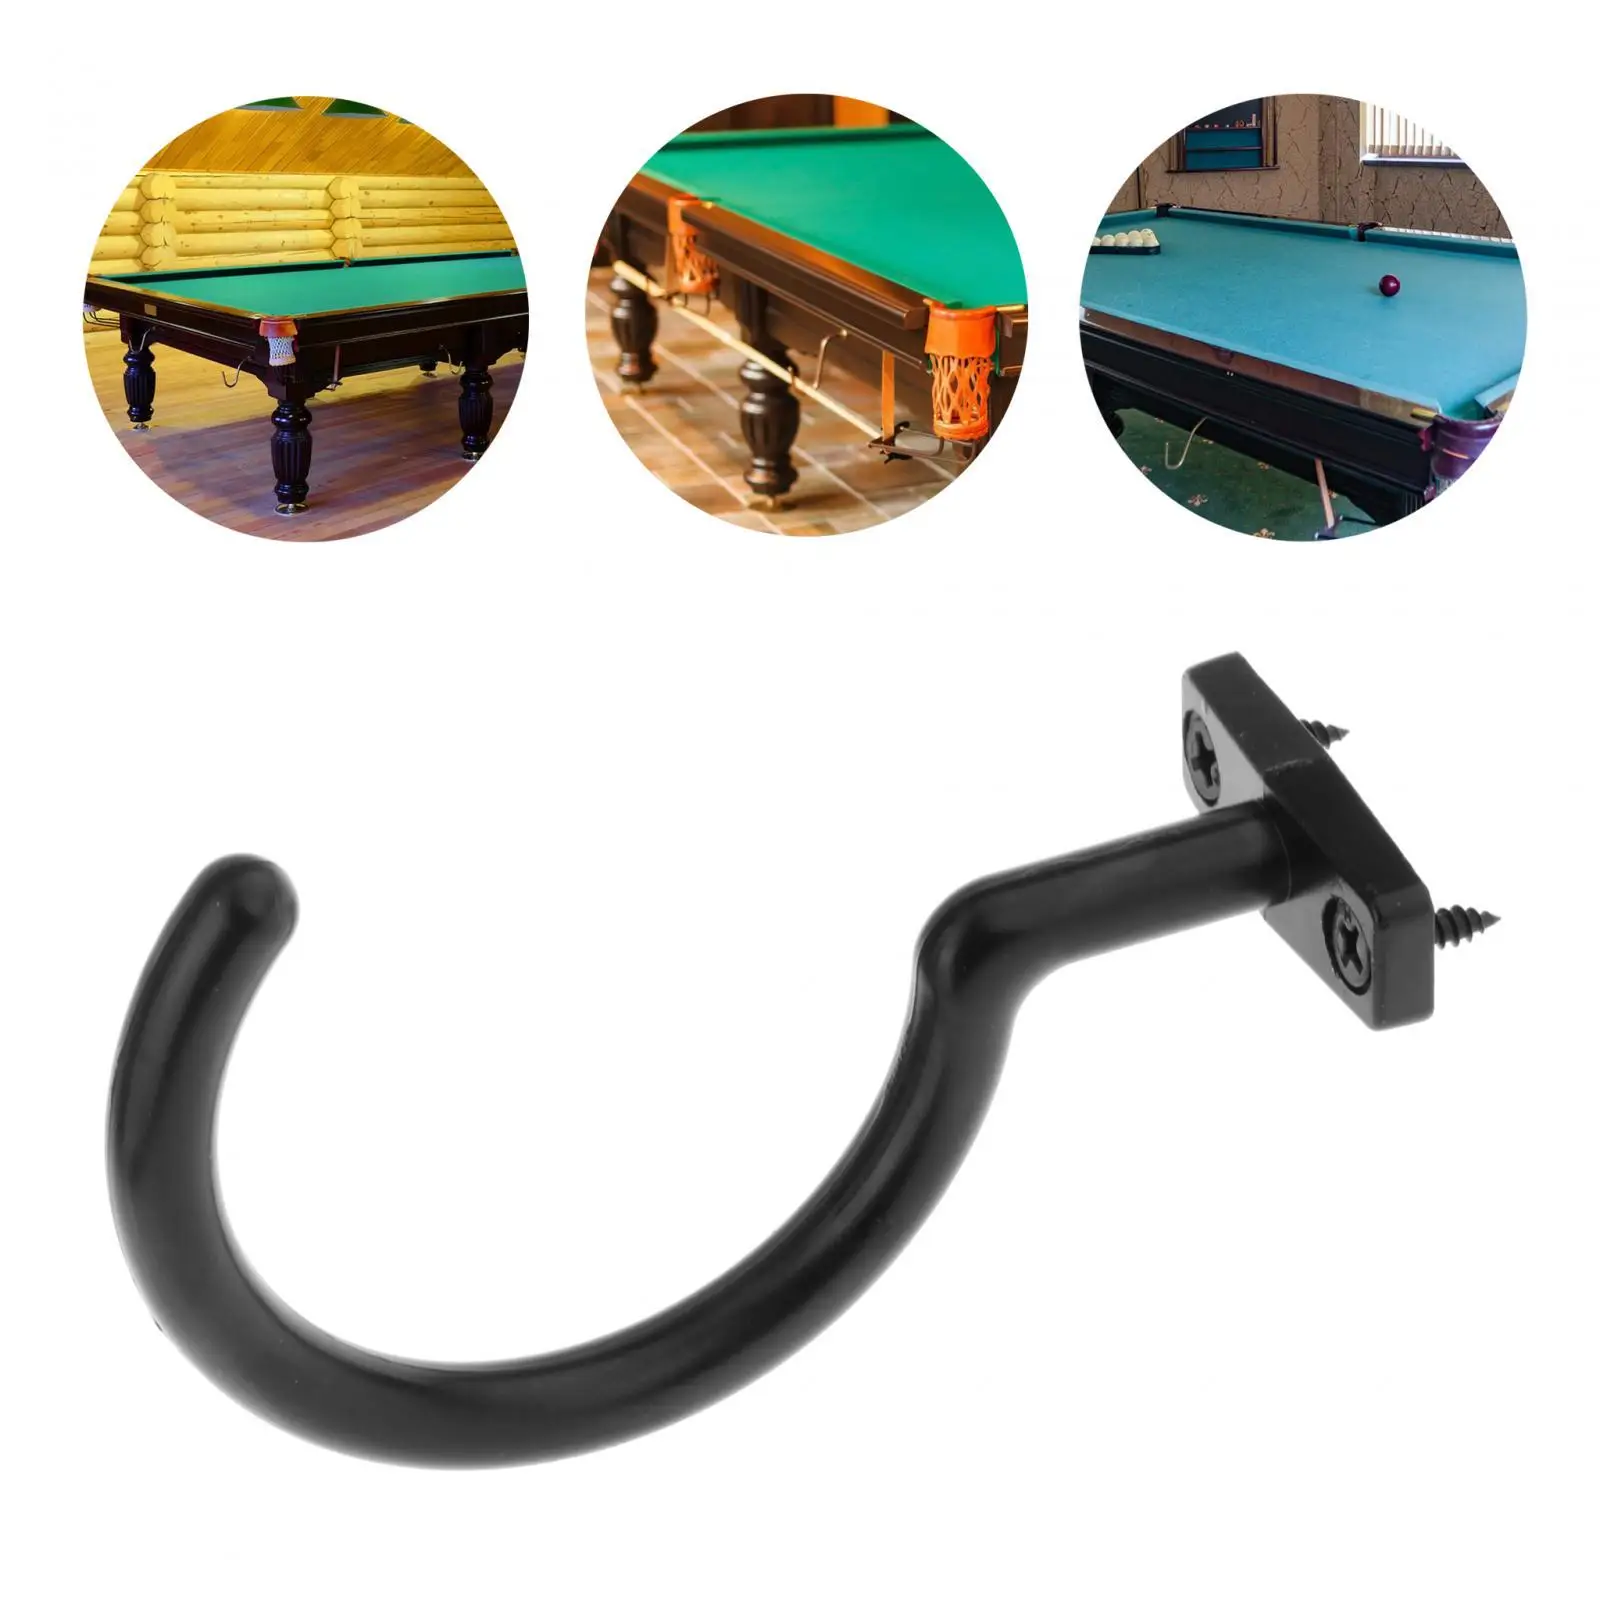 Snooker Billiard Cue Hook with 2 Screws Metal Snooker Pool Cue Racks for Indoor Games Snooker Table Pool Table Accessories